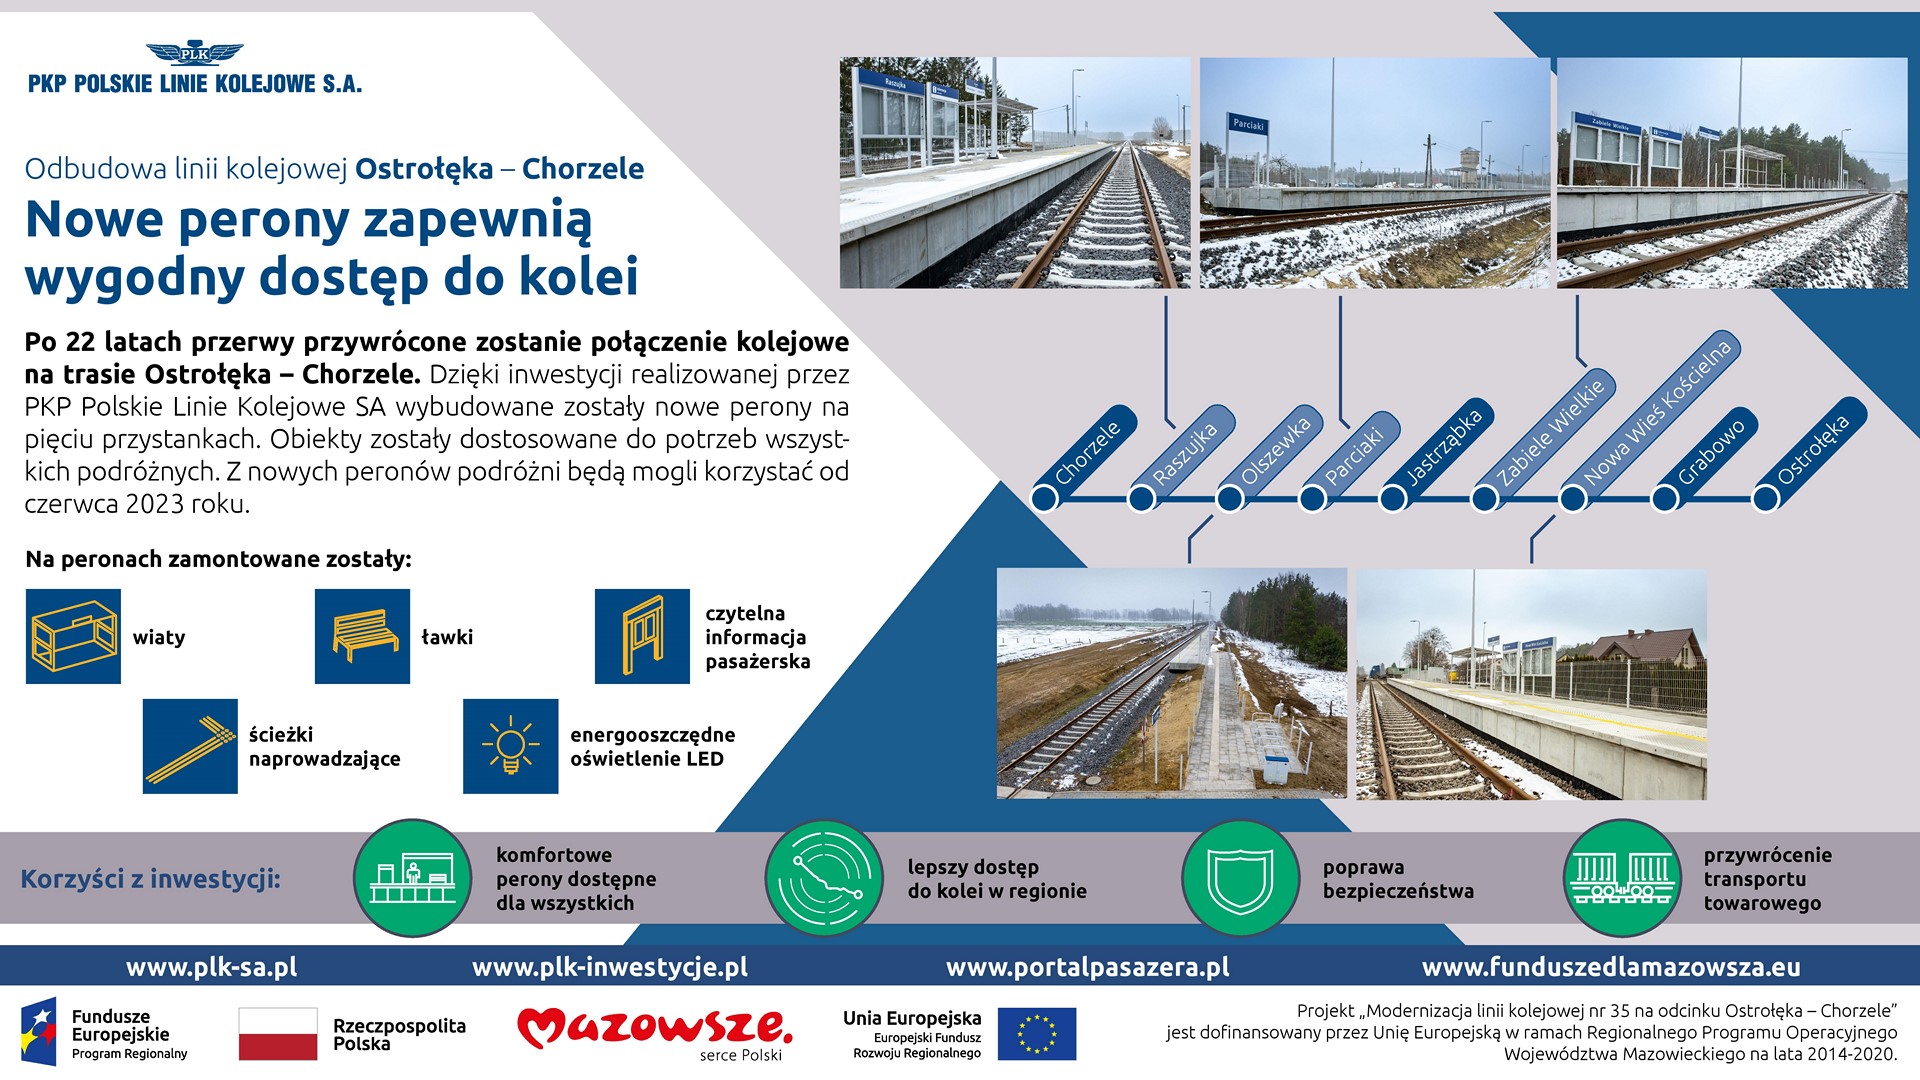 Infografika przedstawia odbudowane stacje i przystanki na linii mkolejowej od Ostrołęki do Chorzeli.